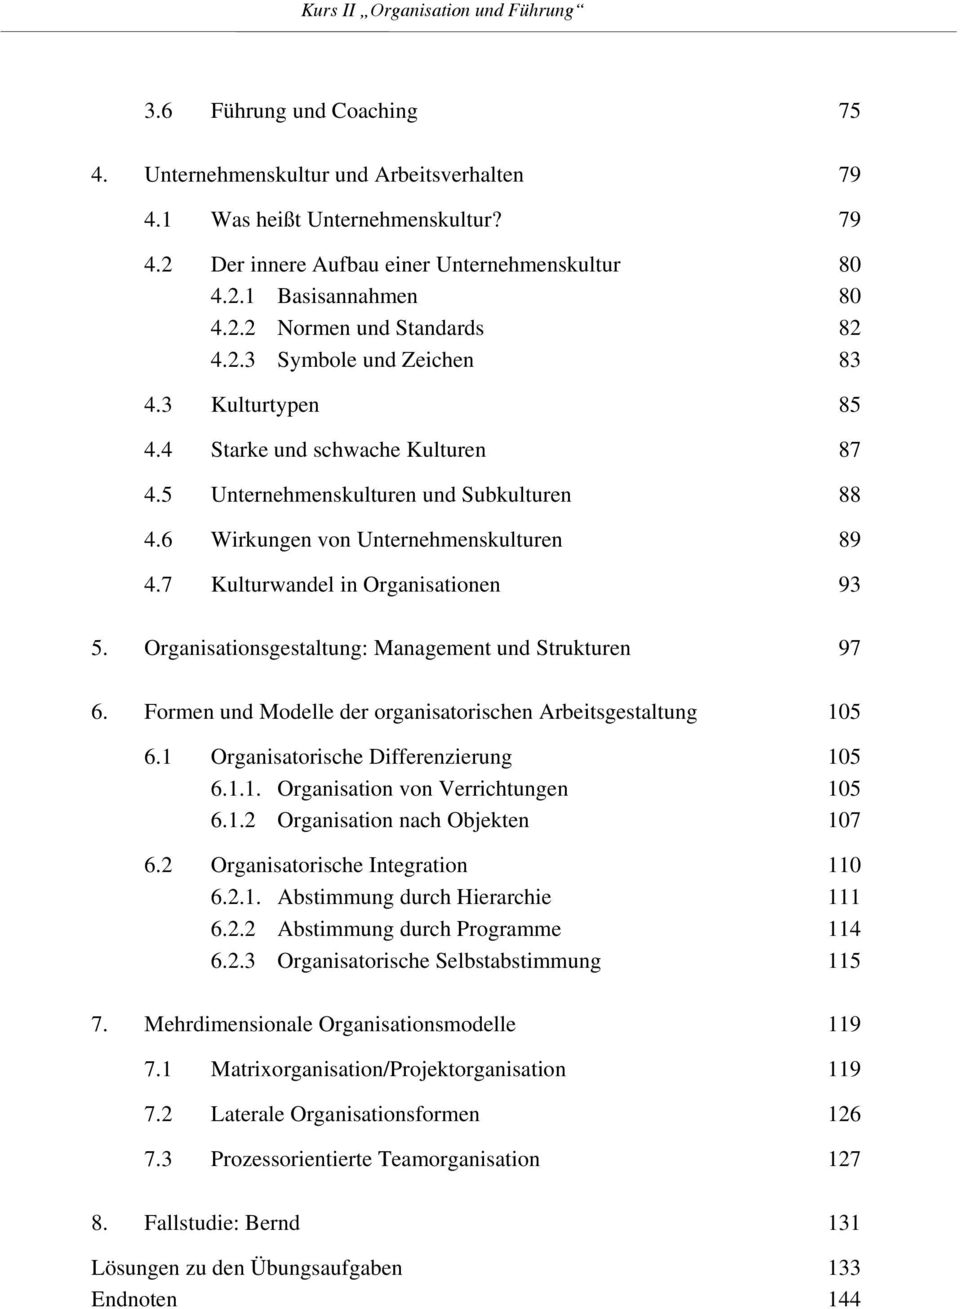 7 Kulturwandel in Organisationen 93 5. Organisationsgestaltung: Management und Strukturen 97 6. Formen und Modelle der organisatorischen Arbeitsgestaltung 105 6.